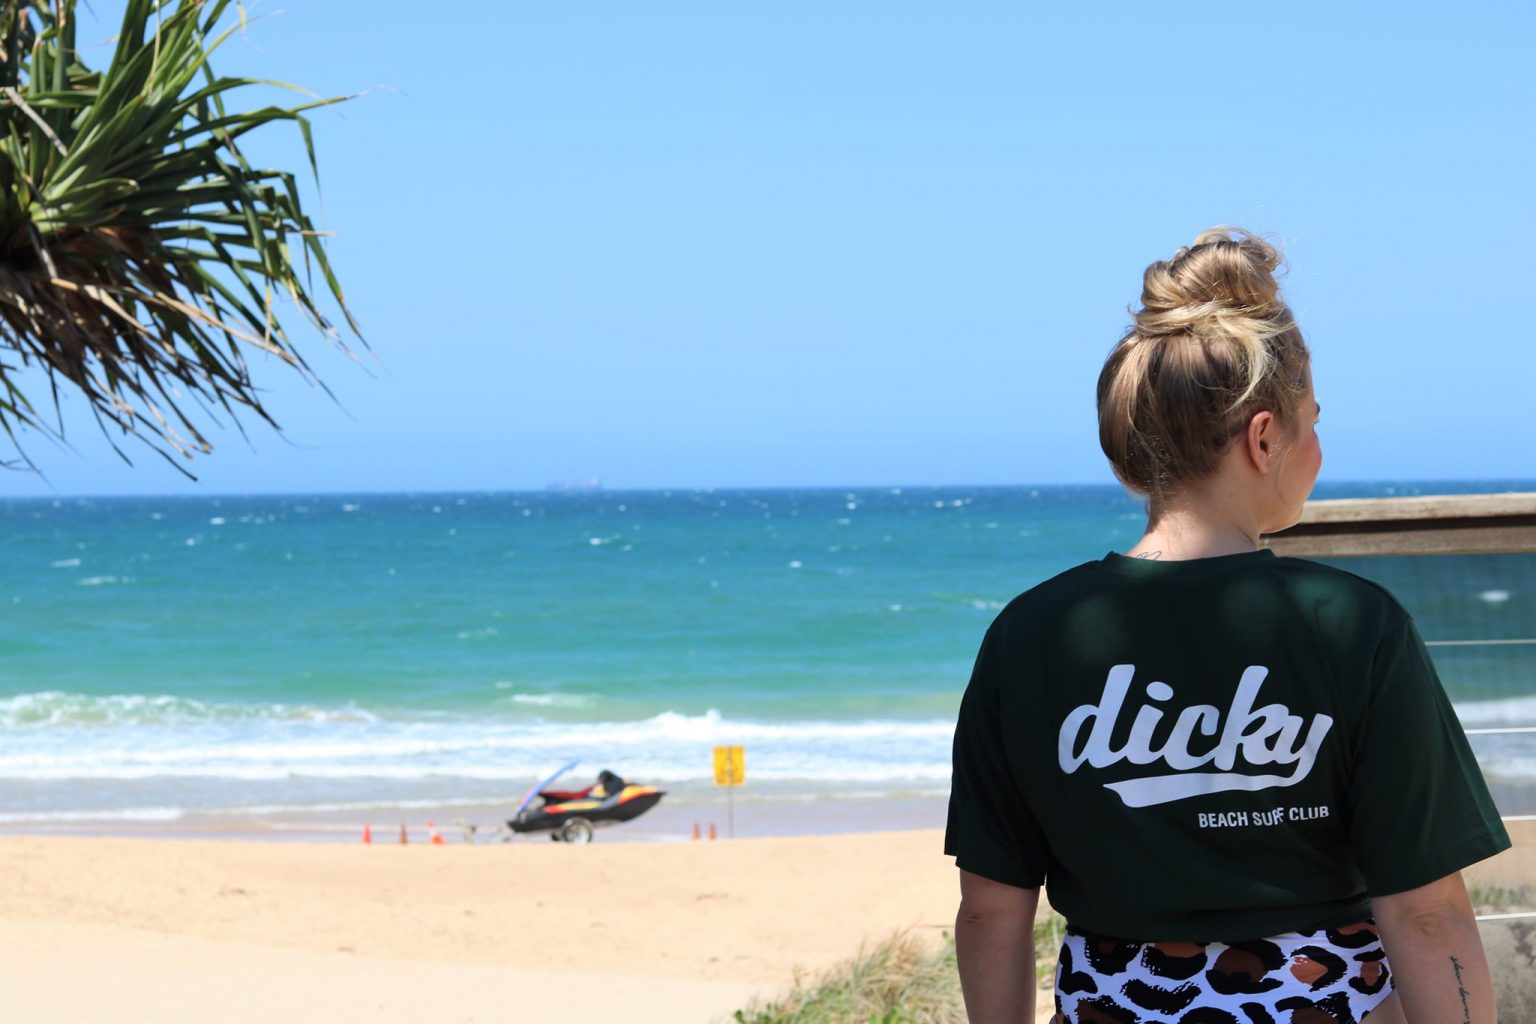 Dicky Beach Surf Life Saving Club